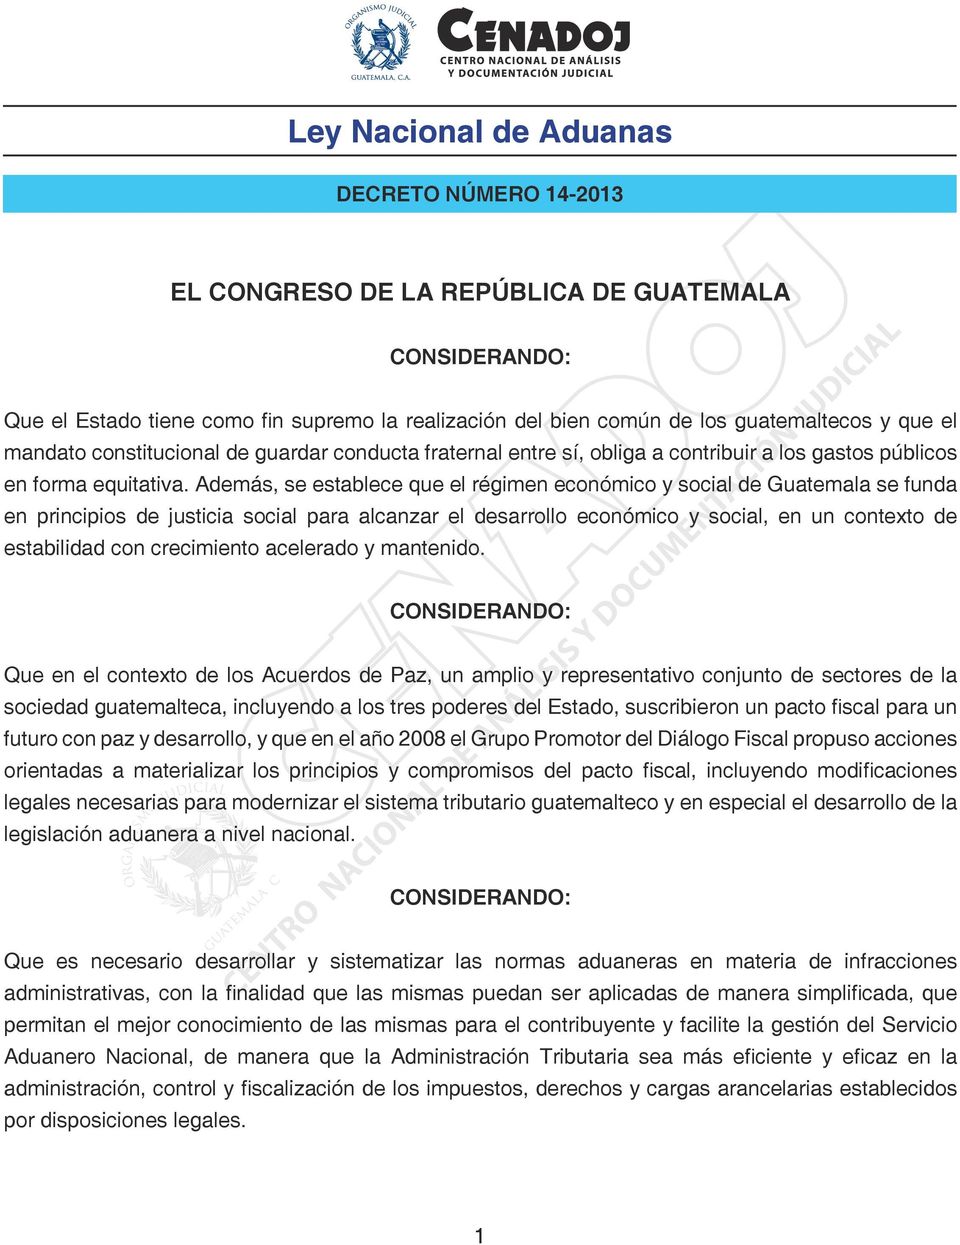 Además, se establece que el régimen económico y social de Guatemala se funda en principios de justicia social para alcanzar el desarrollo económico y social, en un contexto de estabilidad con